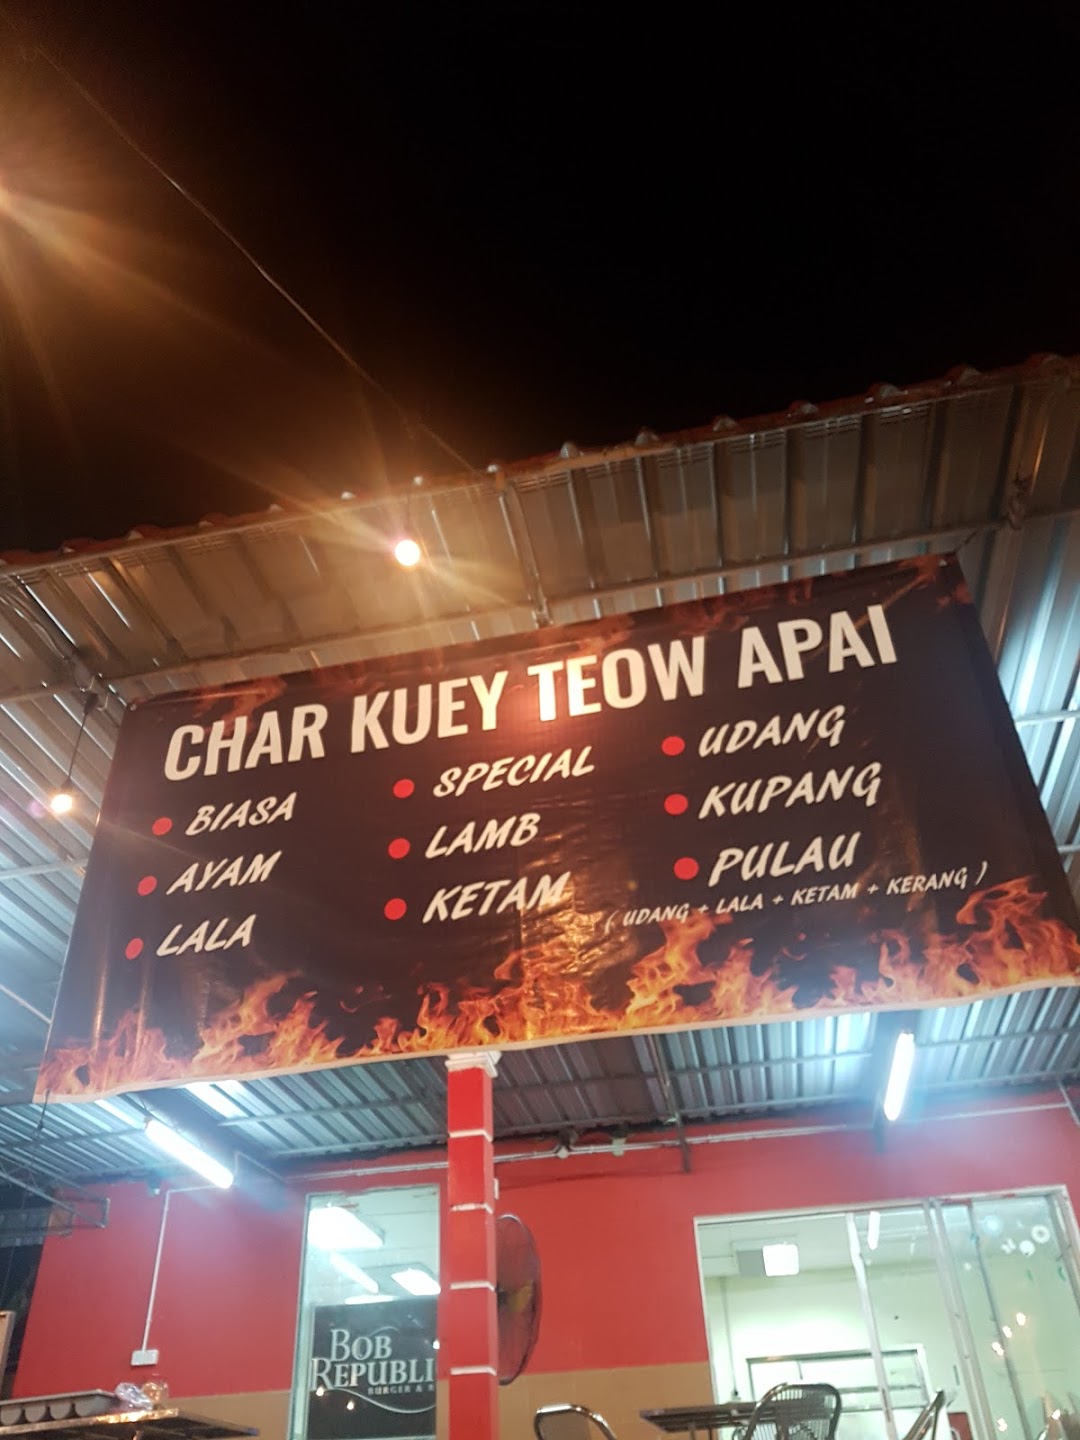 Char Kuey Teow APAI